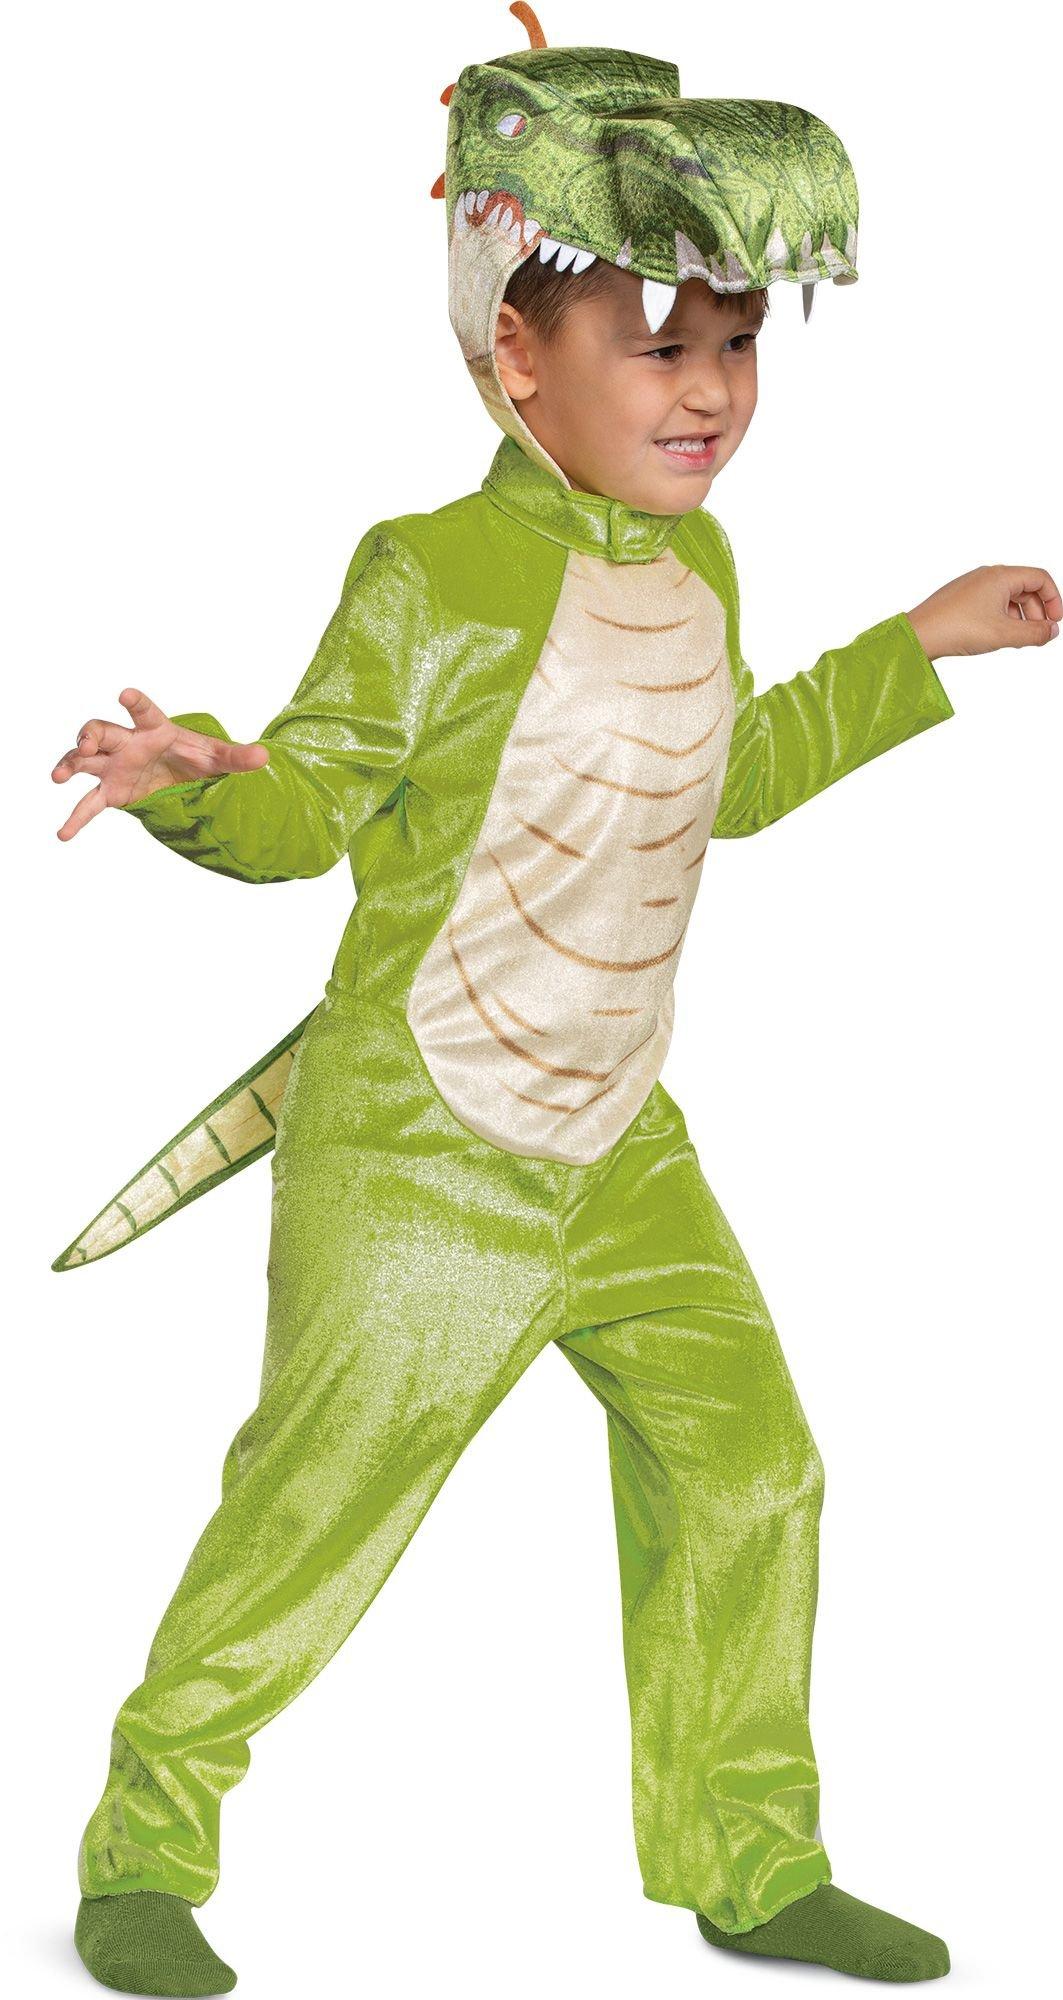 Kids' Giganto Costume - Gigantosaurus